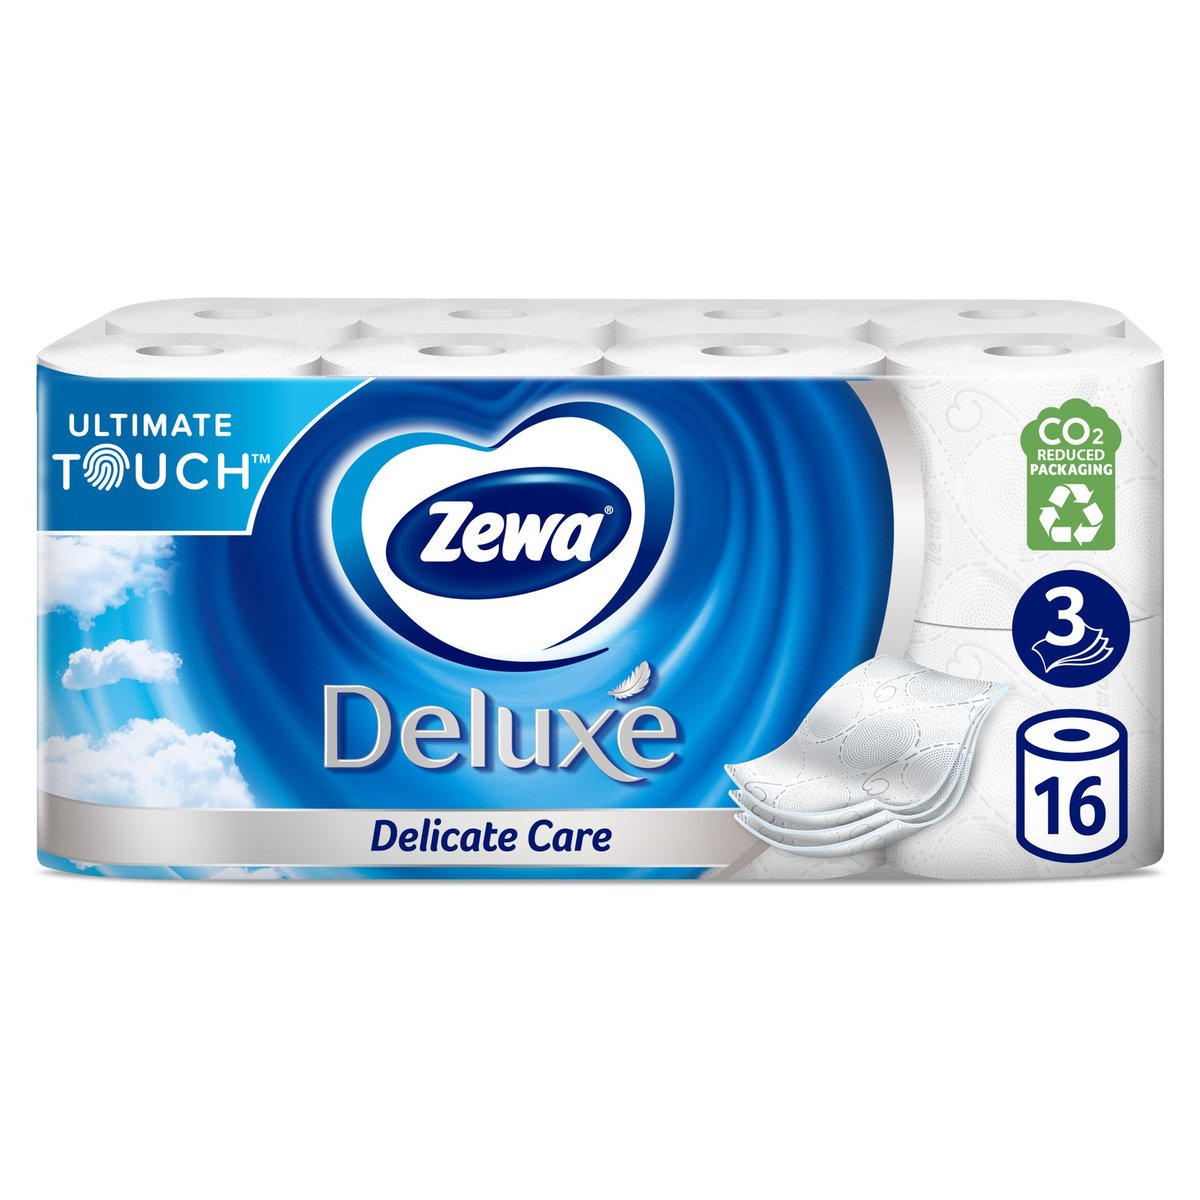 Zewa Deluxe Delicate Care toaletní papír 3vrstvý, 16 ks